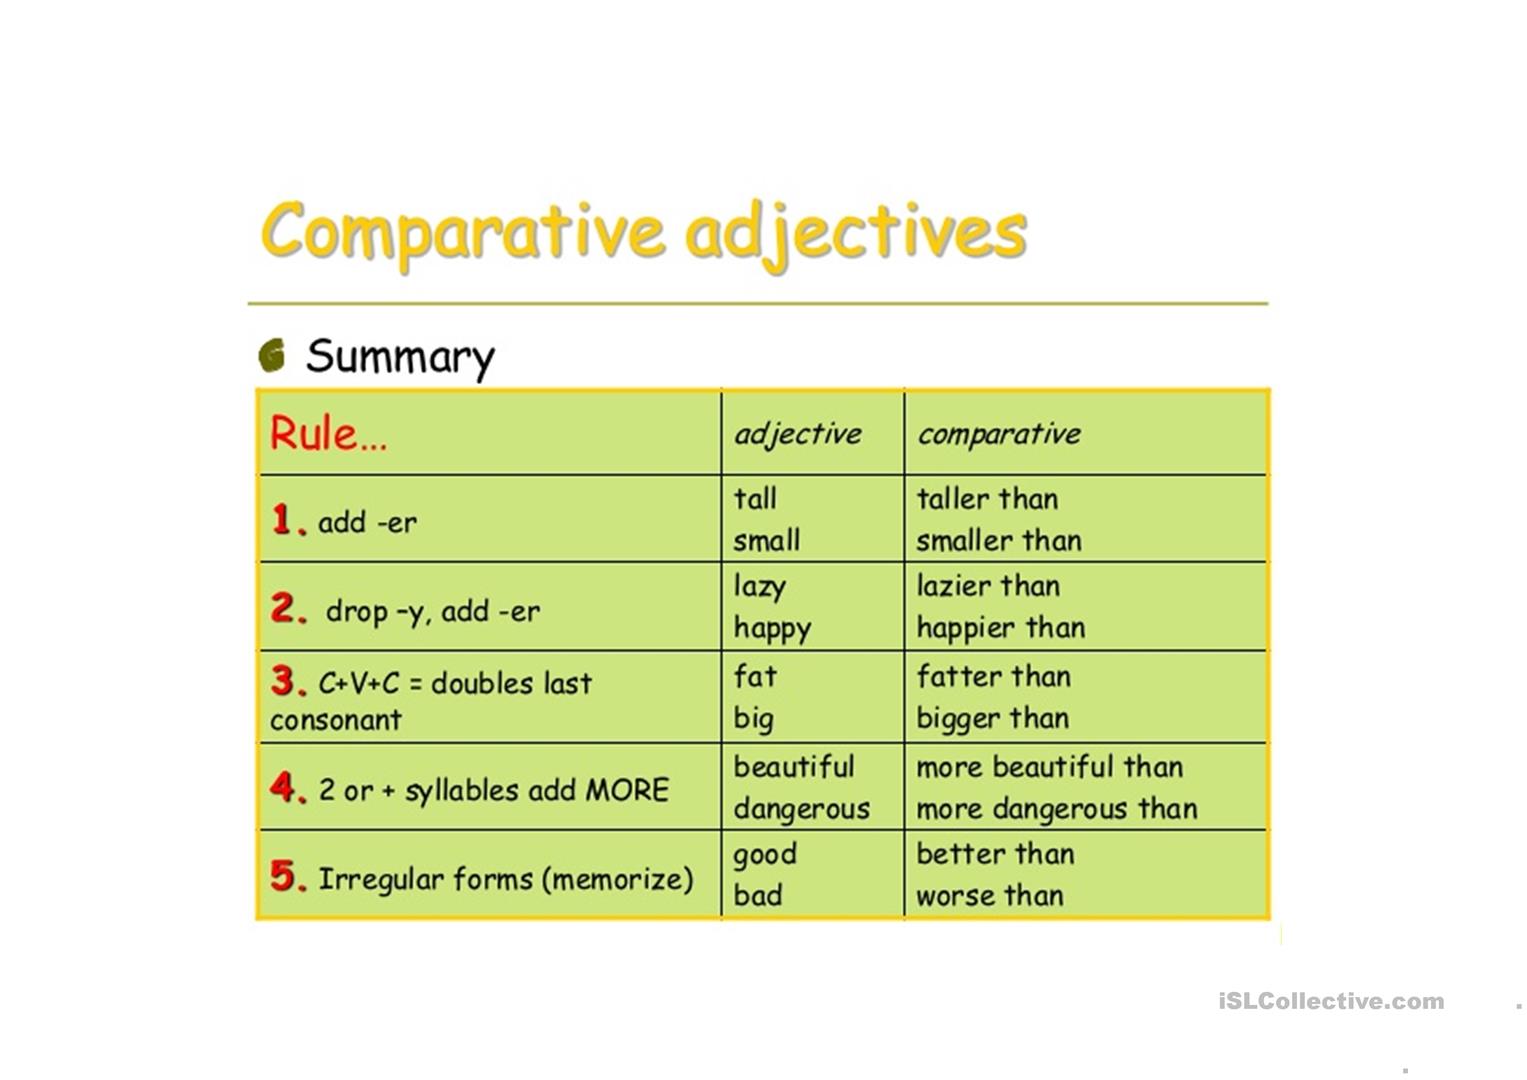 Adjective предложения. Superlative adjectives правило. Superlative таблица. Таблица Comparative and Superlative. Superlative правило.